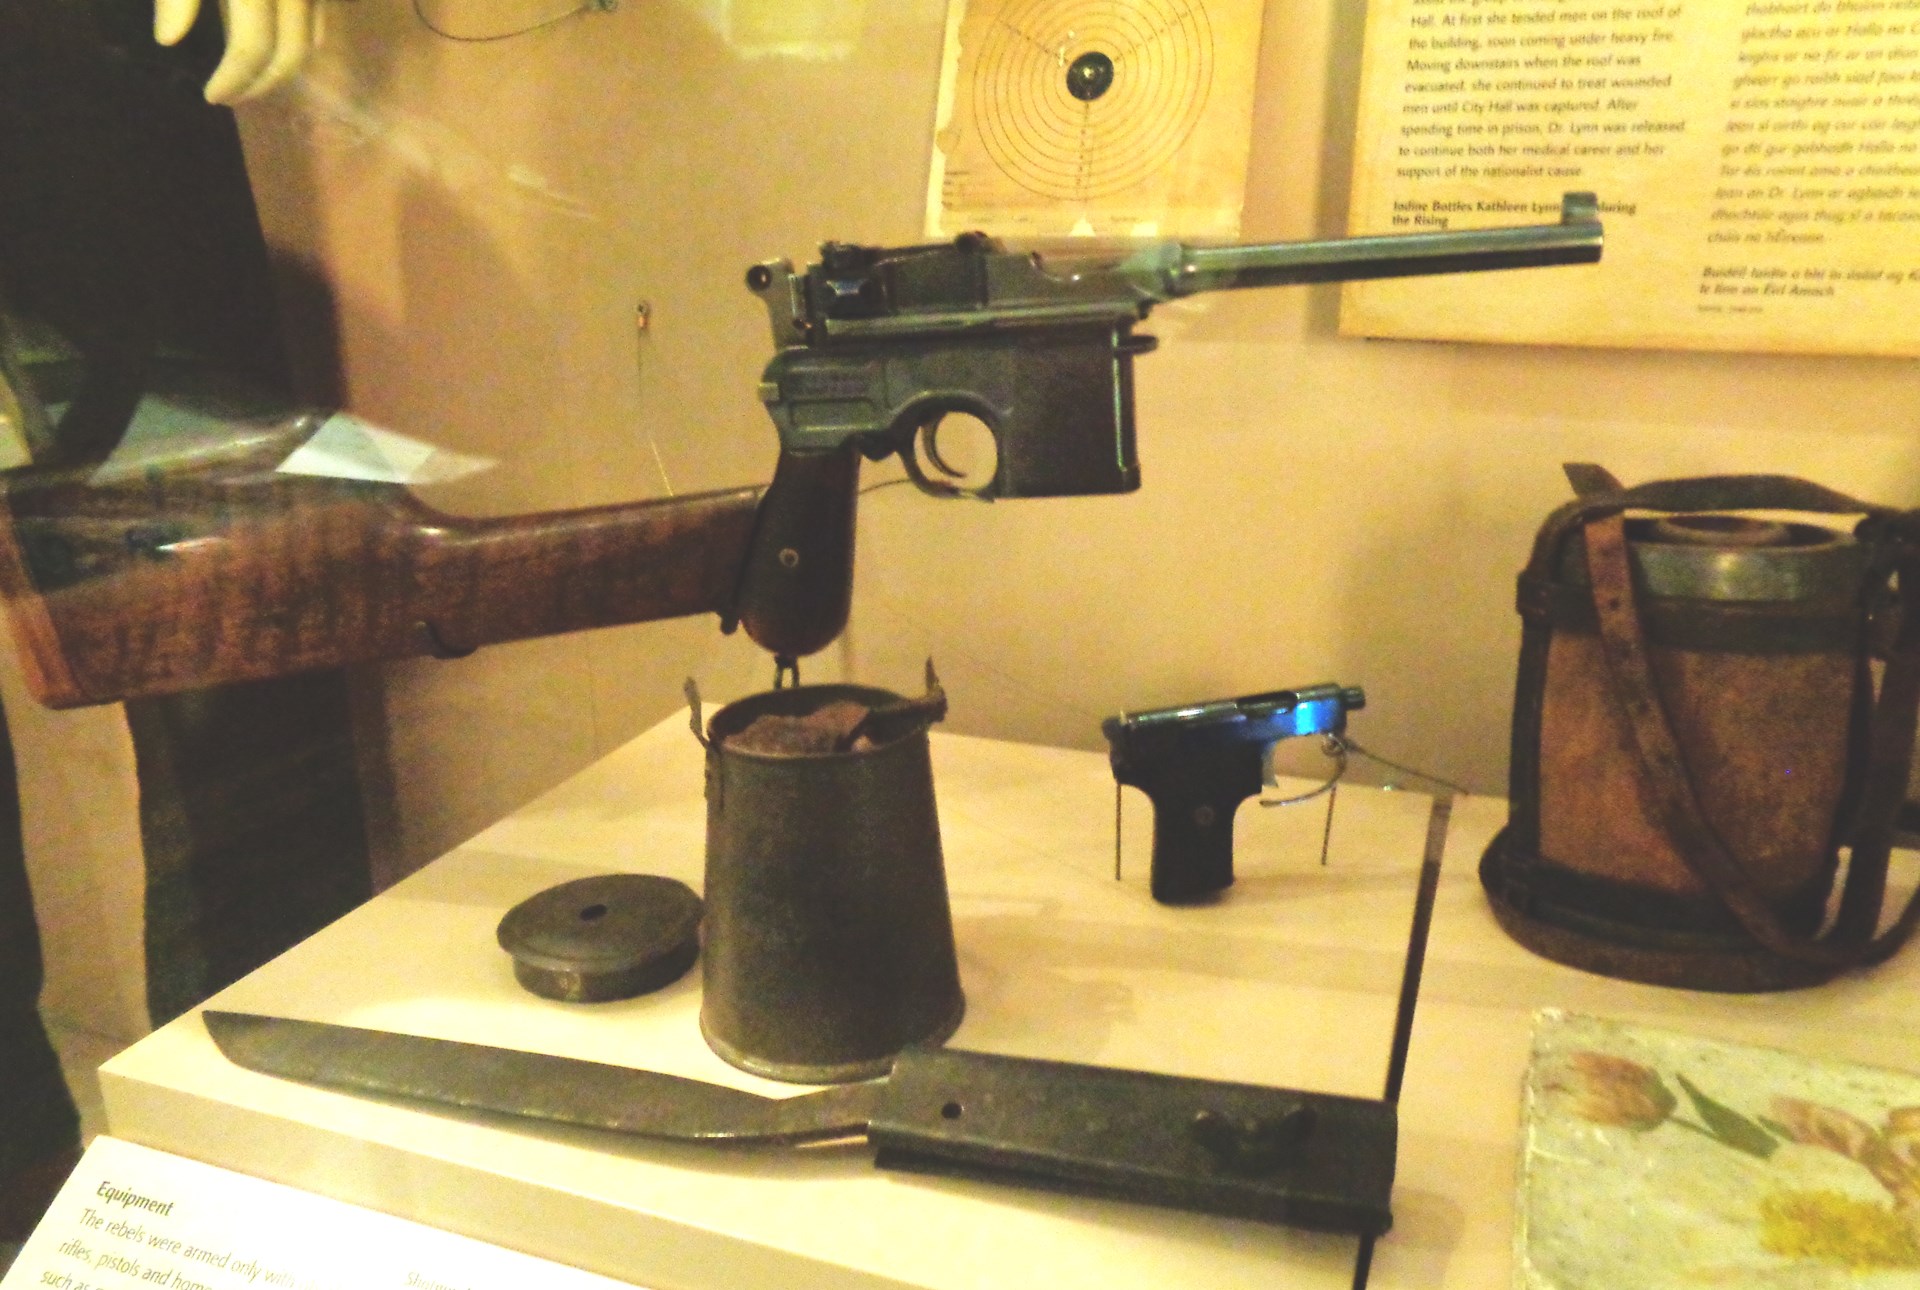 Markievicz pistol on display